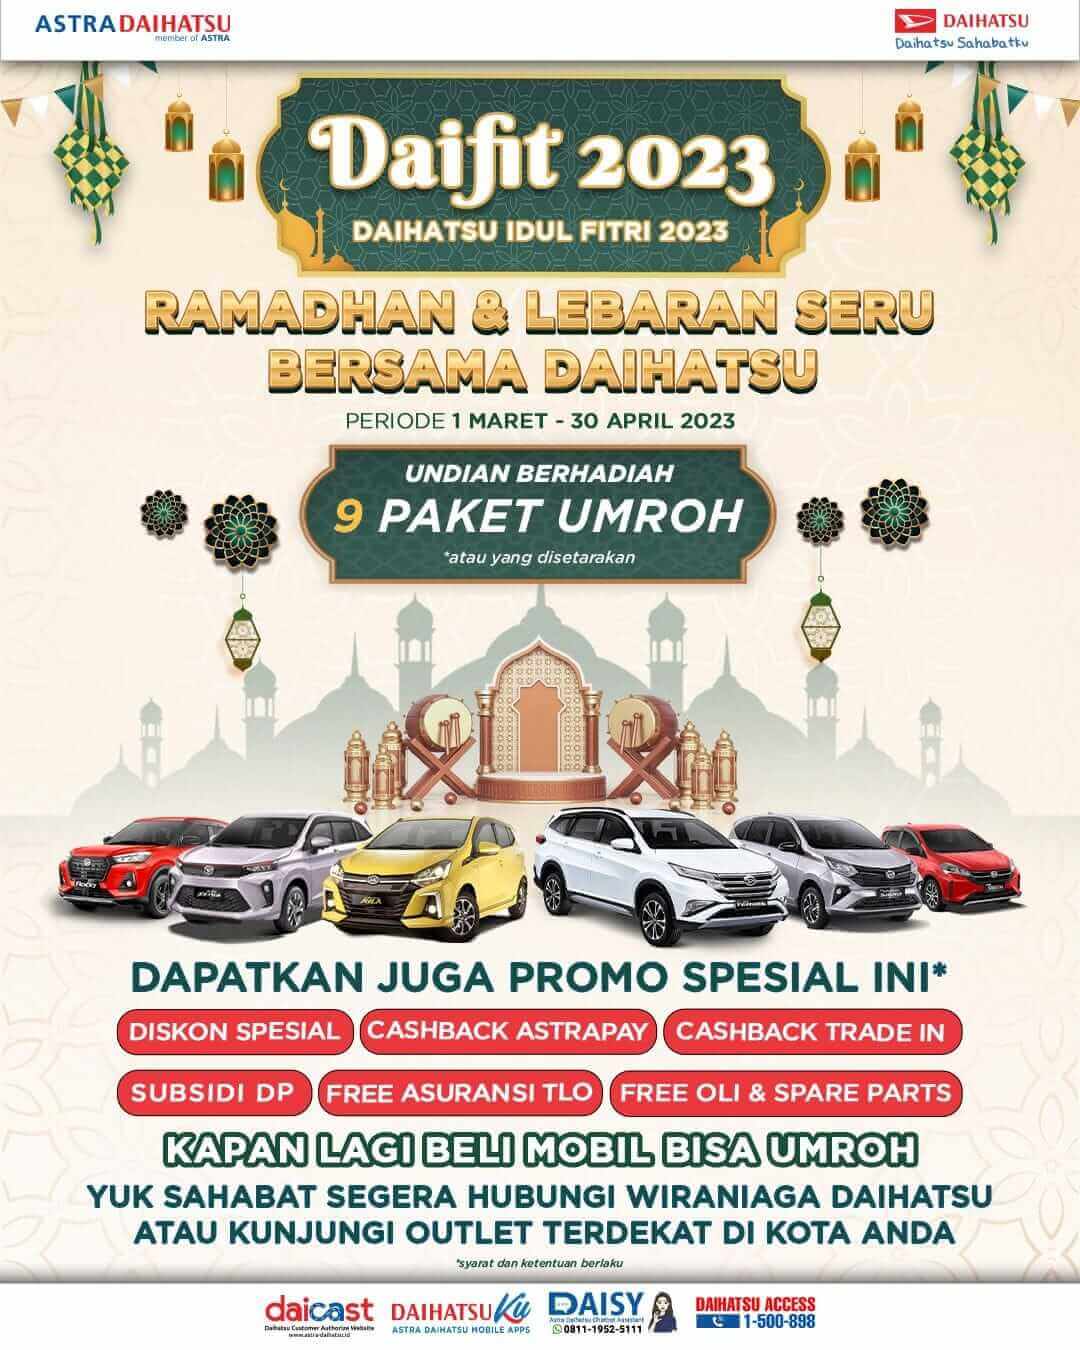 Spesial Promo Daifit 2023 Berlimpah Promo Di Dealer Daihatsu Solo